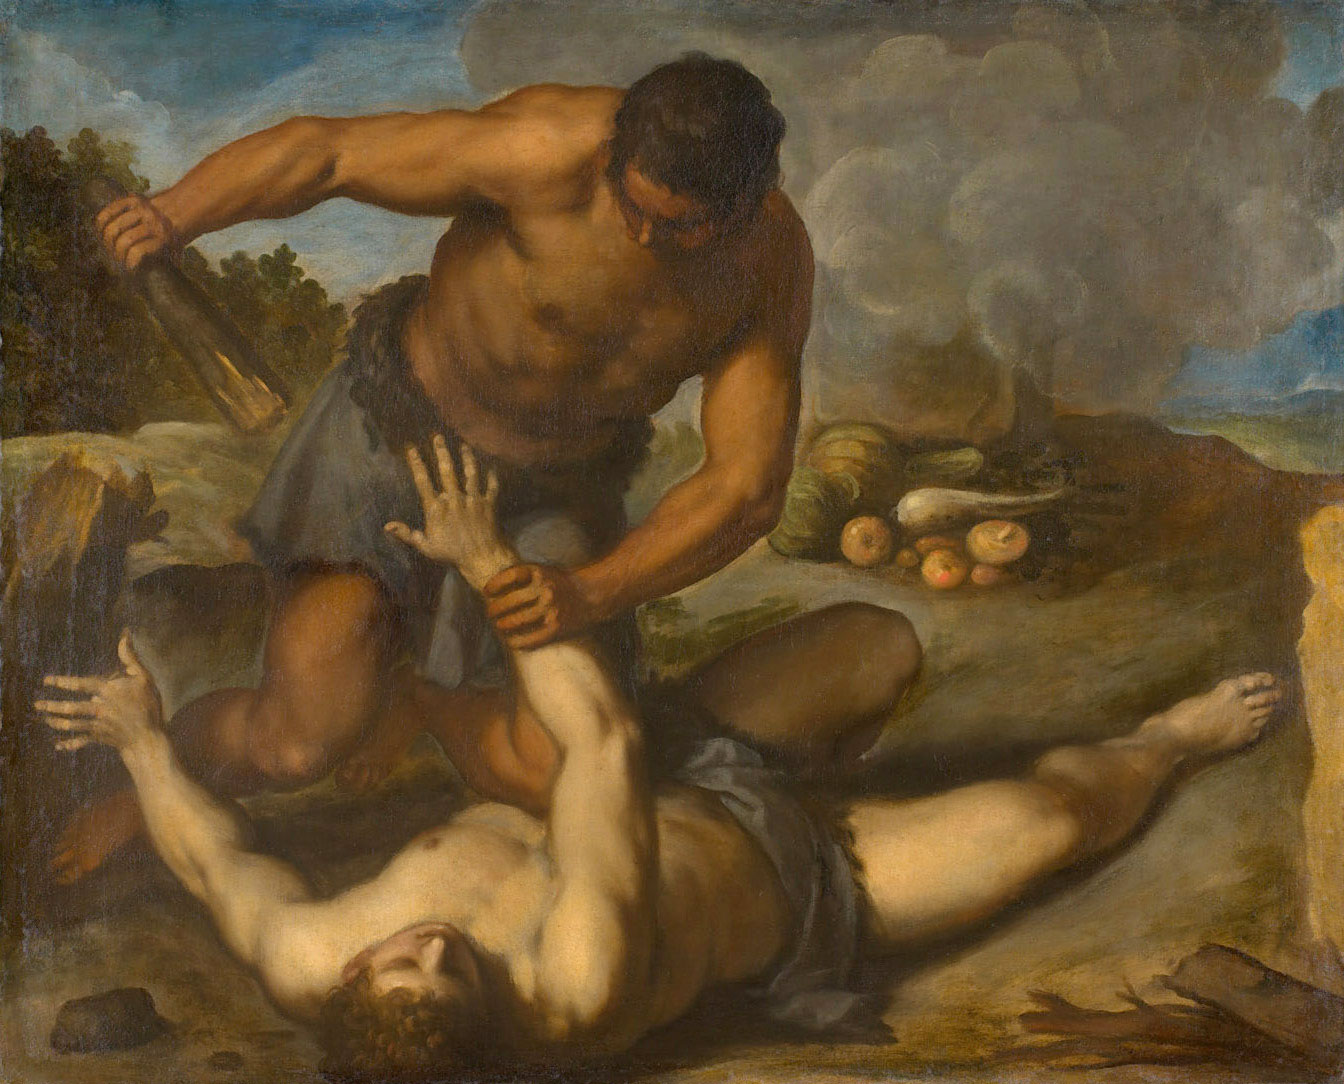 “Cain and Abel” (Caín y Abel) de Palma il Giovane. Imagen a través de Wikimedia Commons.